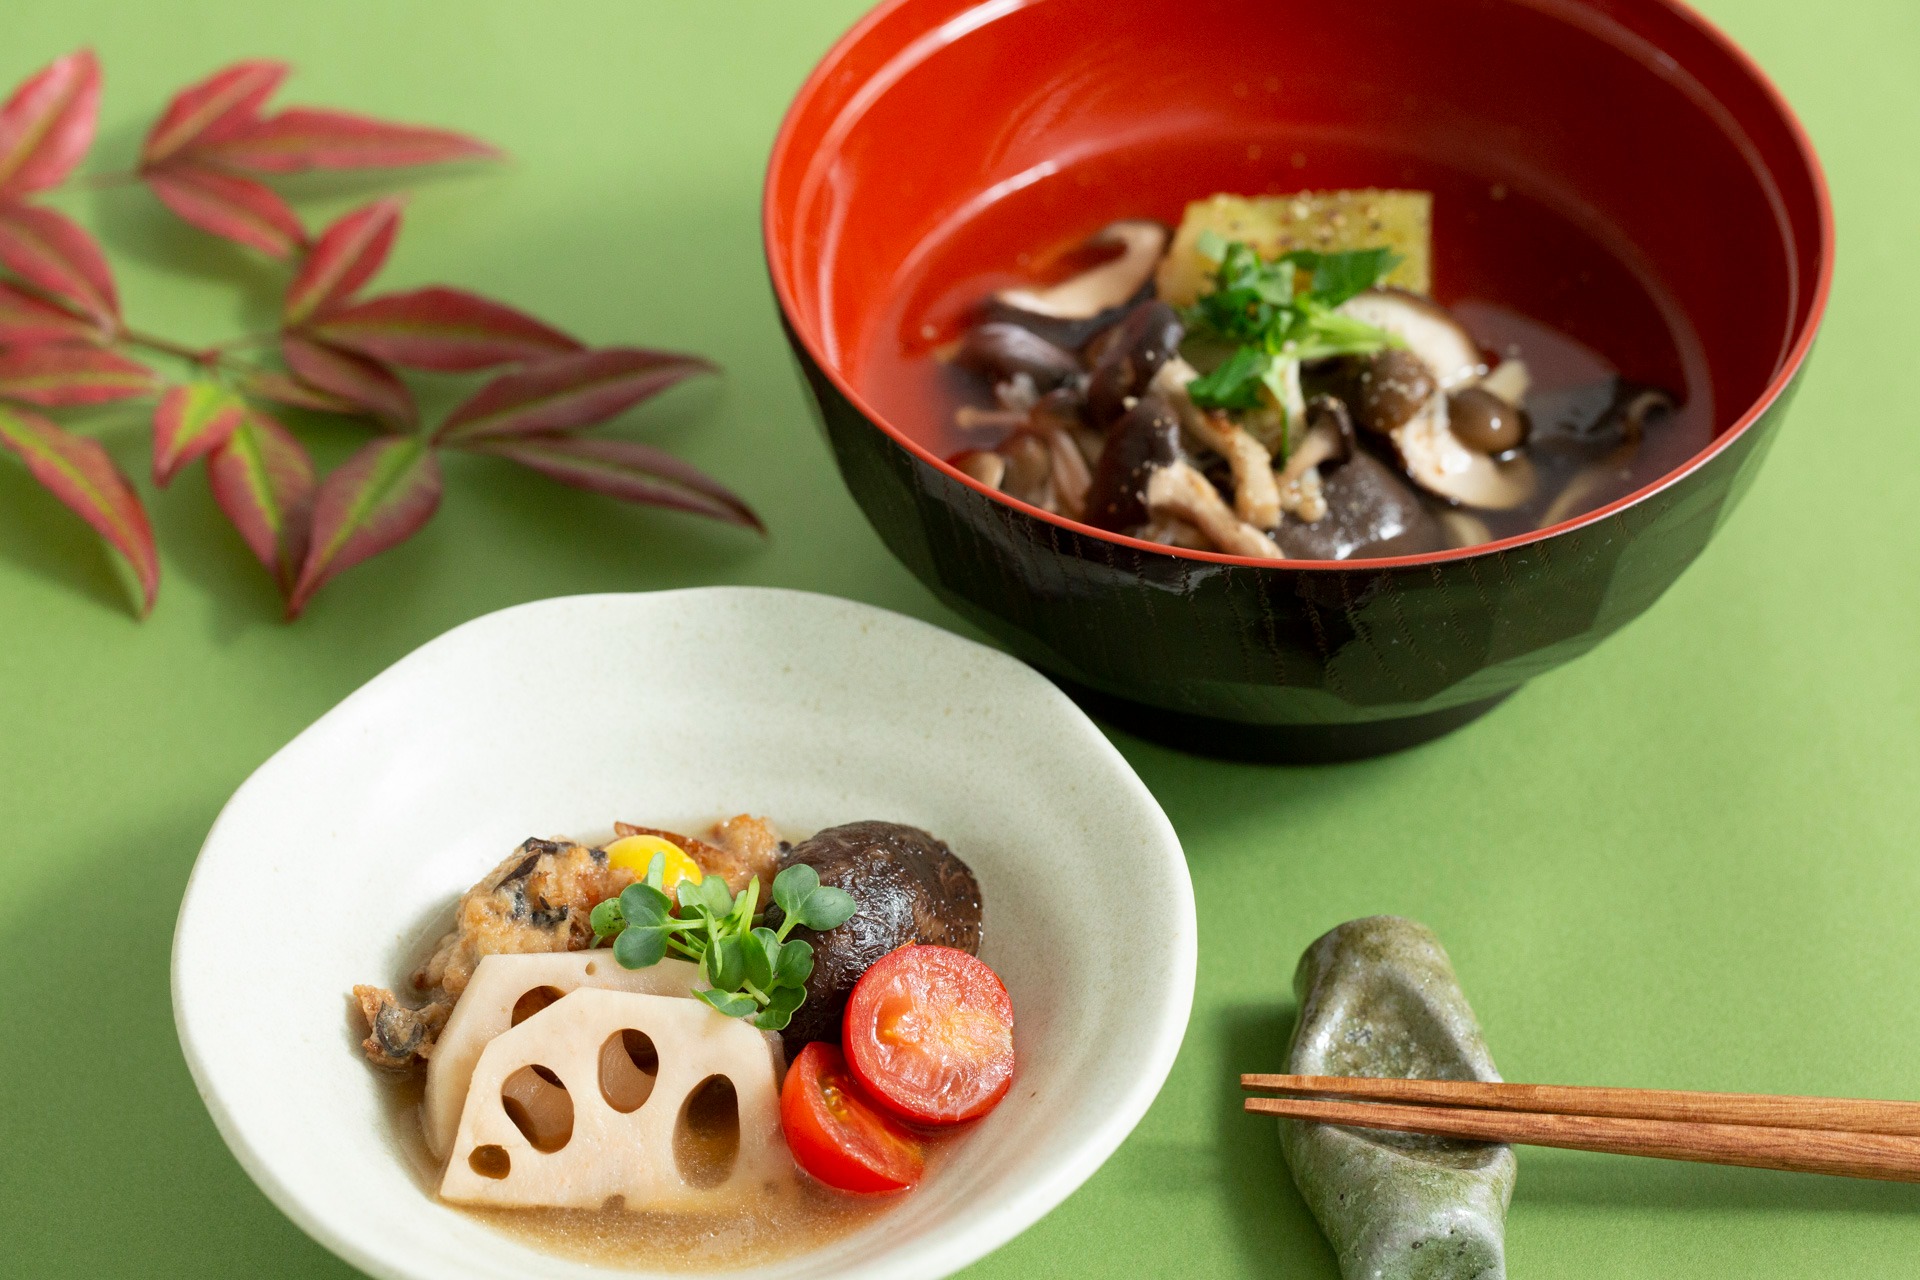 Japanese Food Culture Washoku Based On Dashi And Umami Shungate